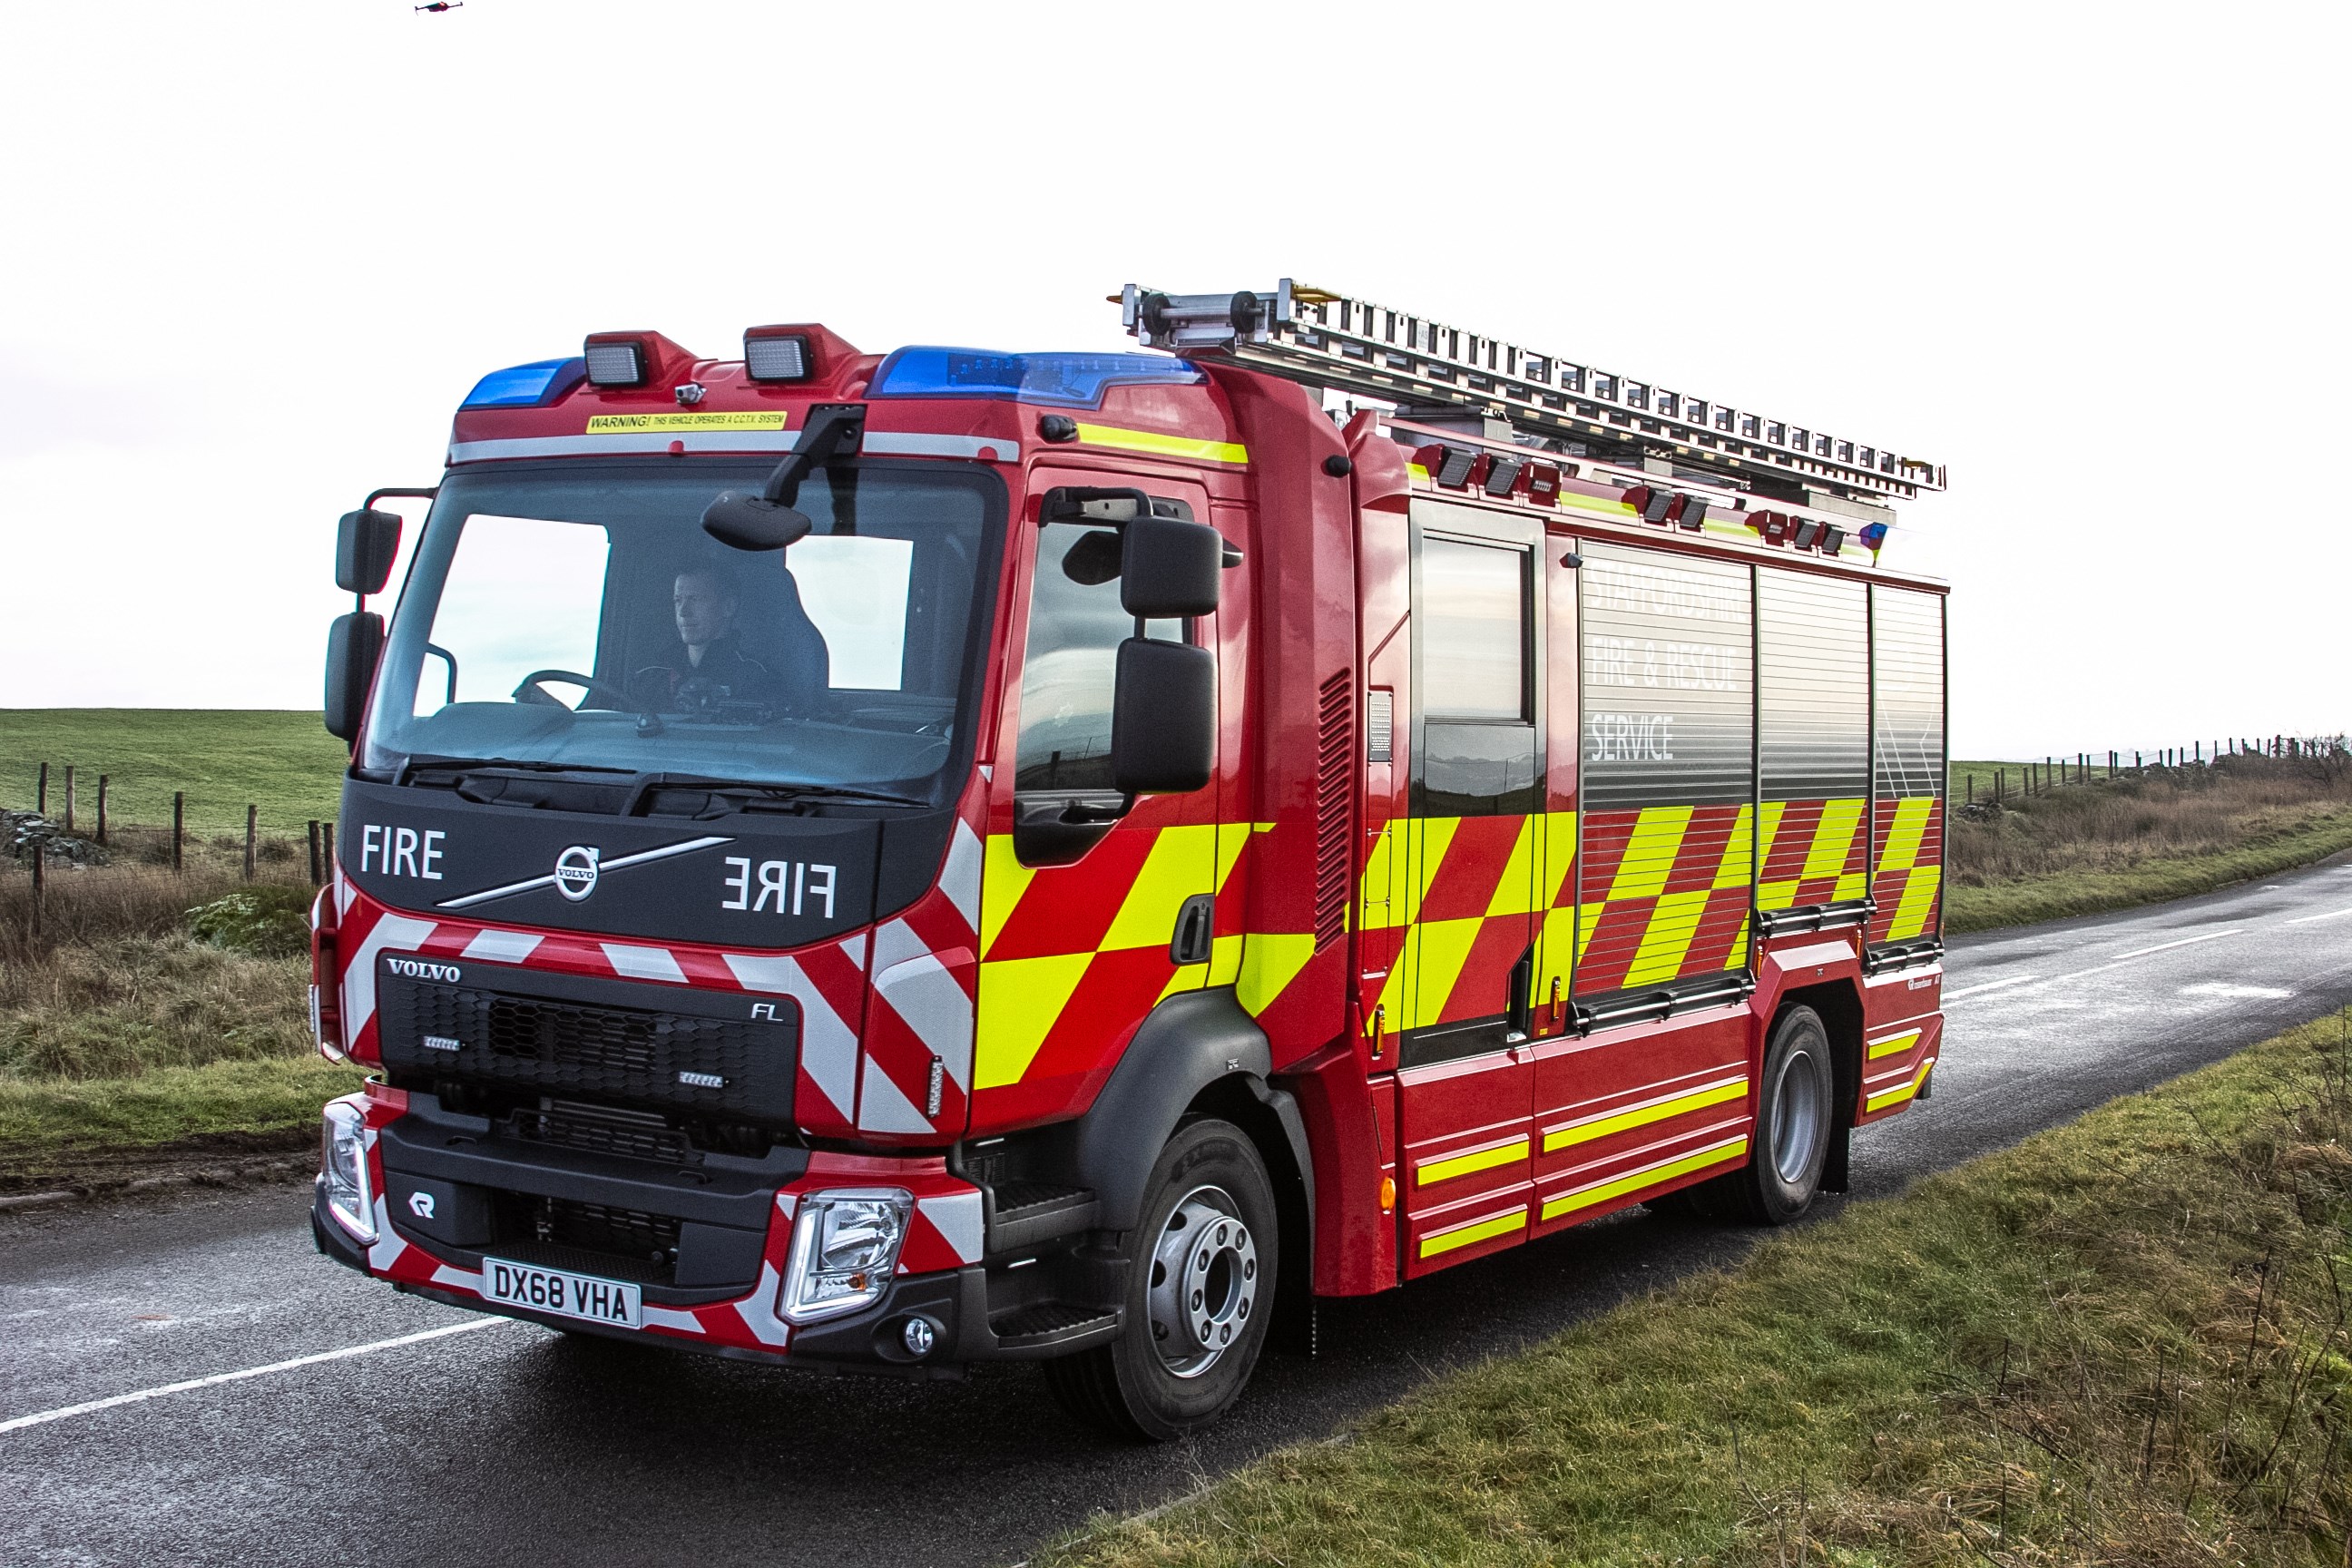 News | Staffordshire Fire & Rescue Service